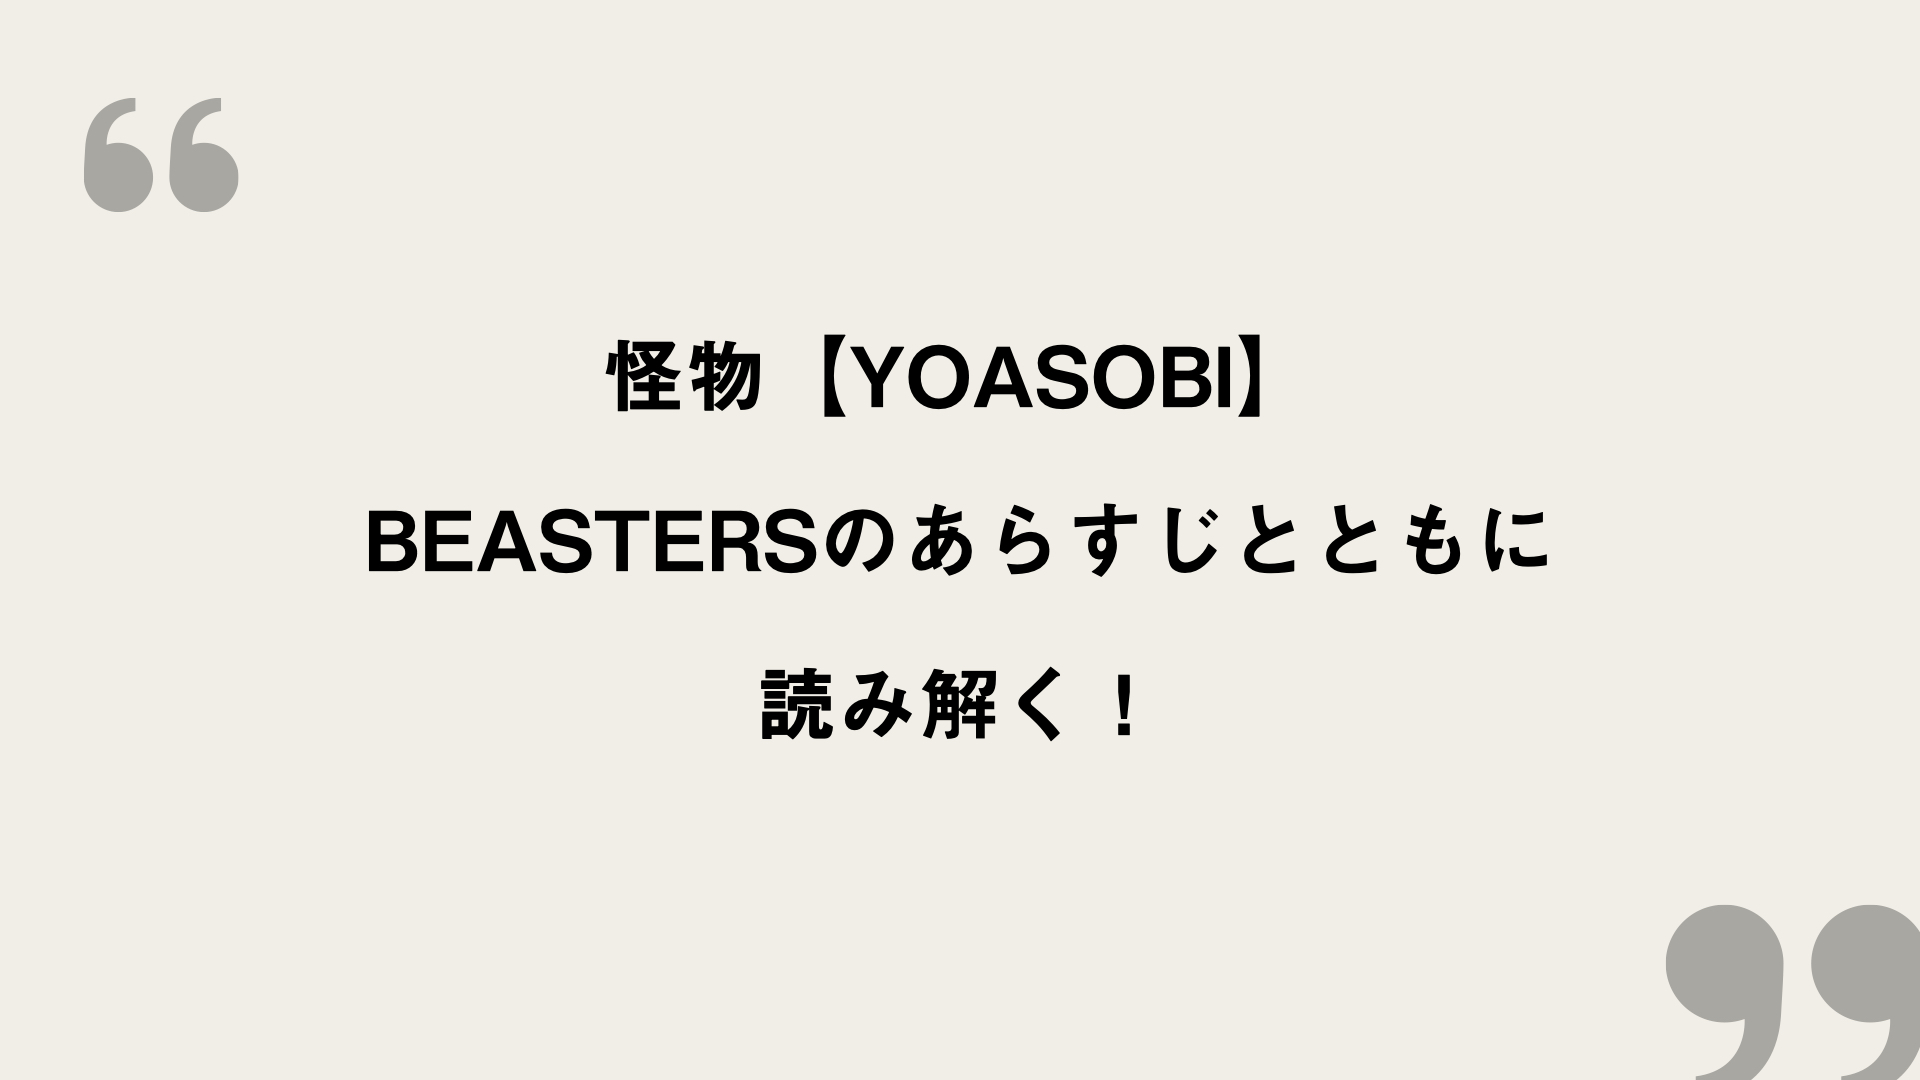 怪物 Yoasobi 歌詞の意味を考察 Beastersのあらすじとともに読み解く Framu Media